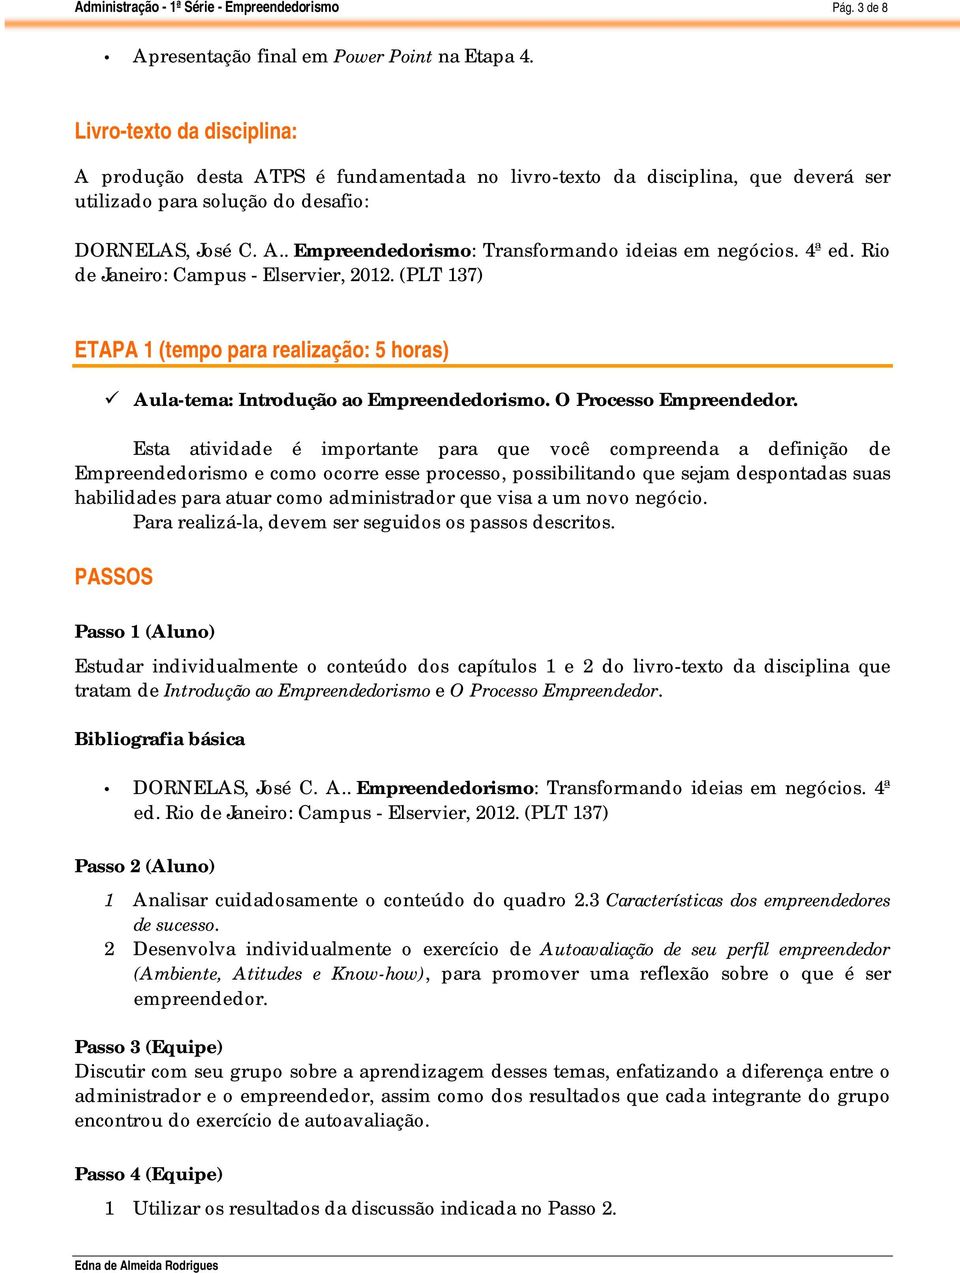 4ª ed. Rio de Janeiro: Campus - Elservier, 2012. (PLT 137) ETAPA 1 (tempo para realização: 5 horas) Aula-tema: Introdução ao Empreendedorismo. O Processo Empreendedor.